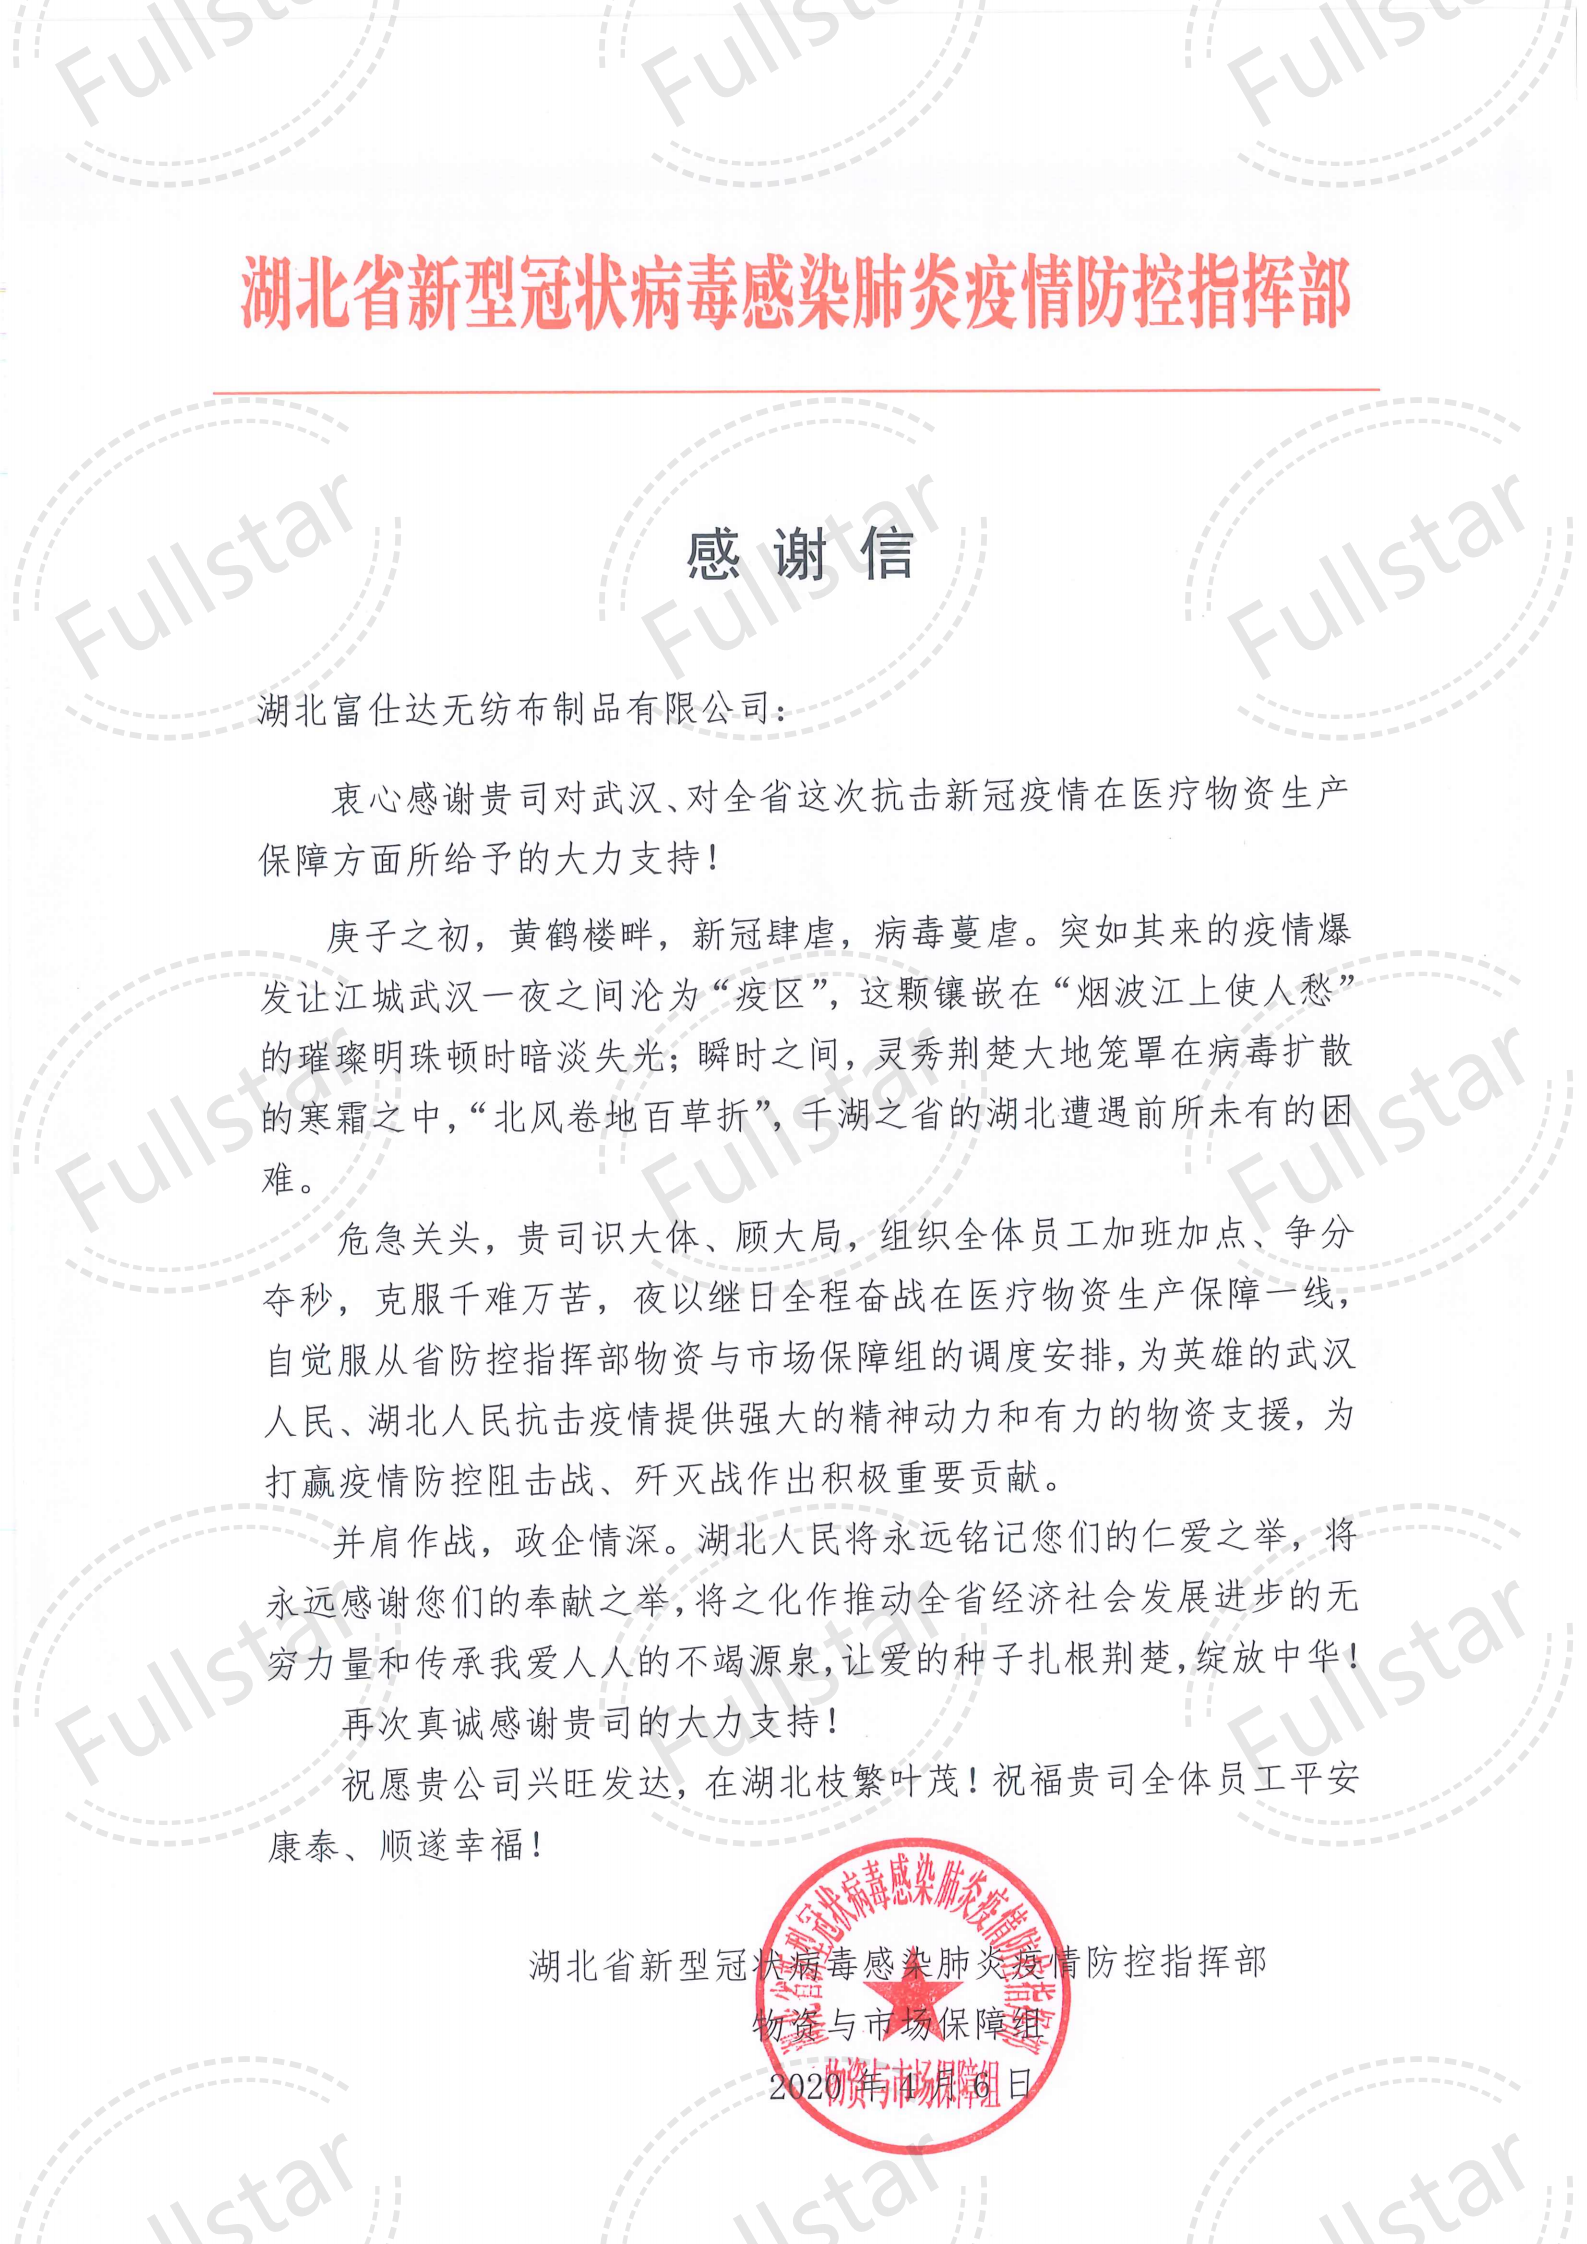 (Hubei Fushida Nonwovens Company) Lettera di ringraziamento dalla sede centrale di controllo provinciale di Hubei_00 (1) .png